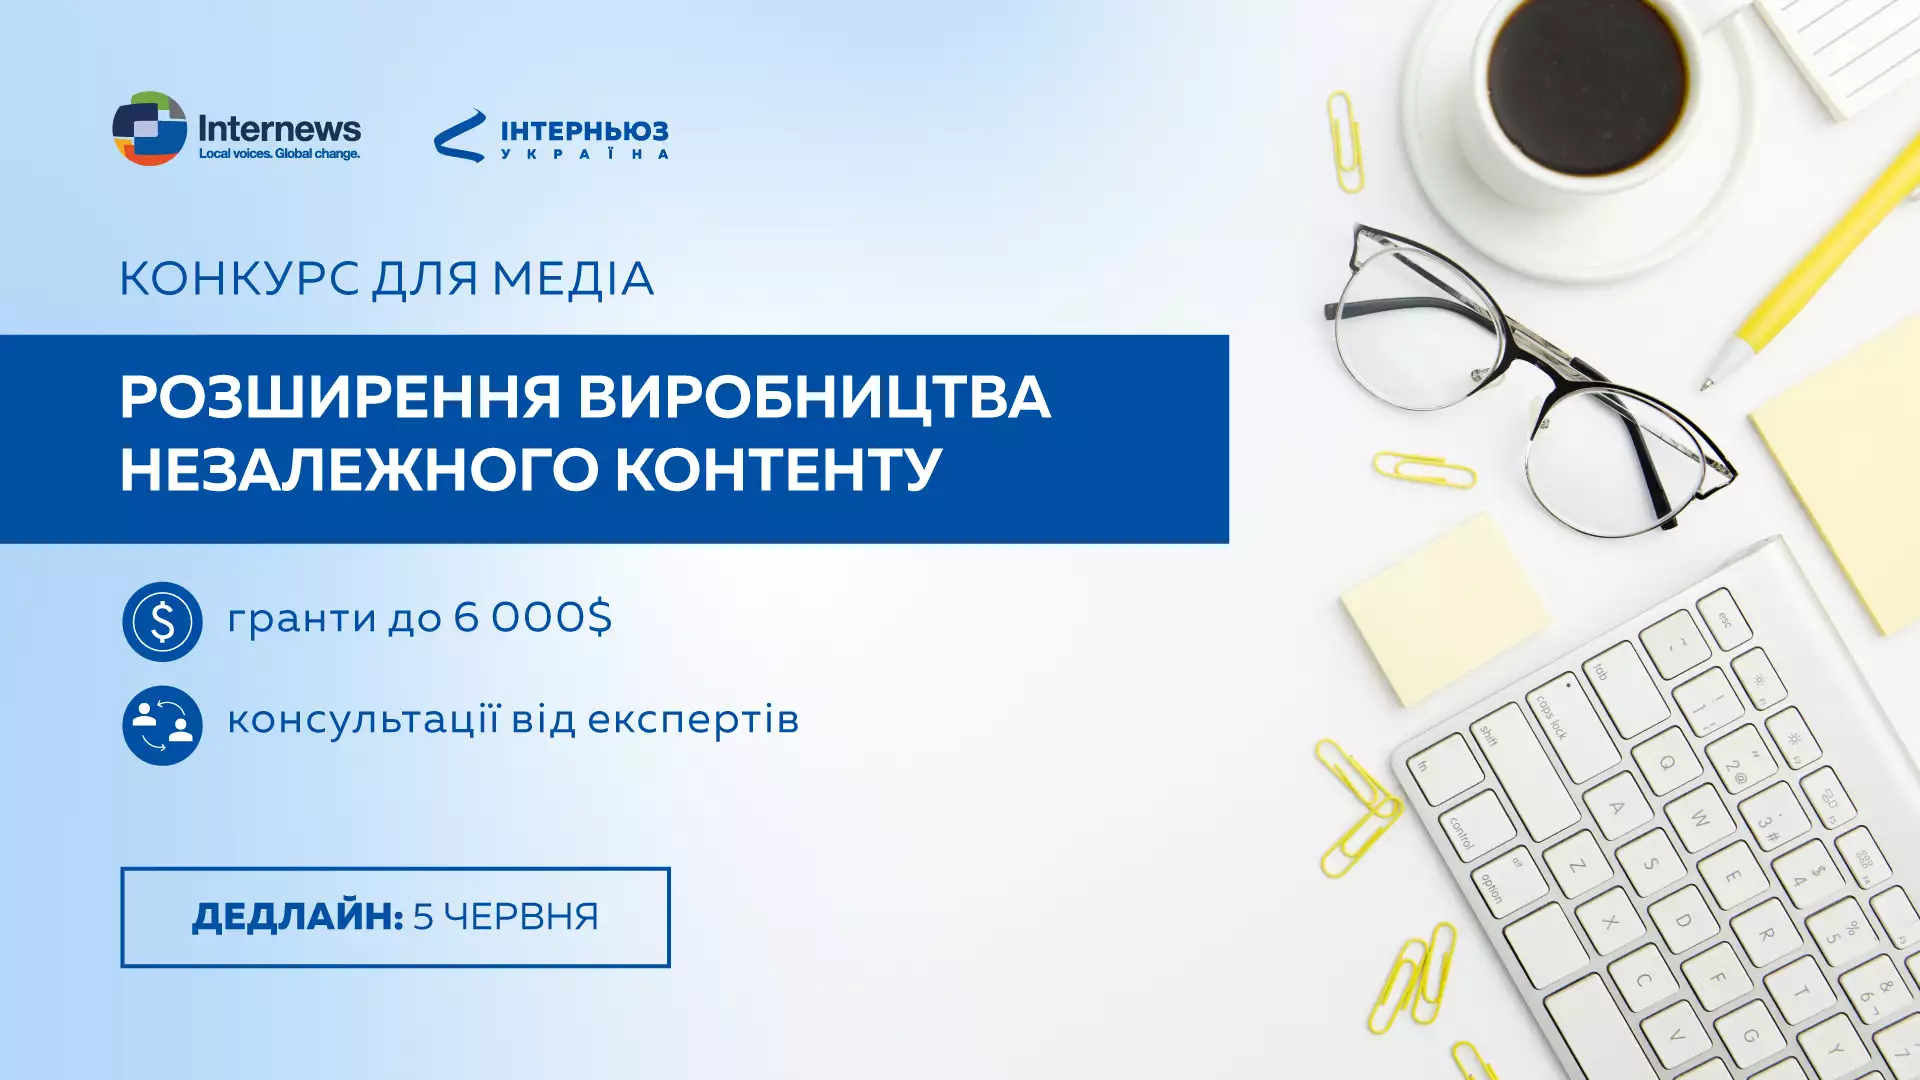 До 5 червня — подання заявок на конкурс для медіа «Розширення виробництва незалежного контенту»